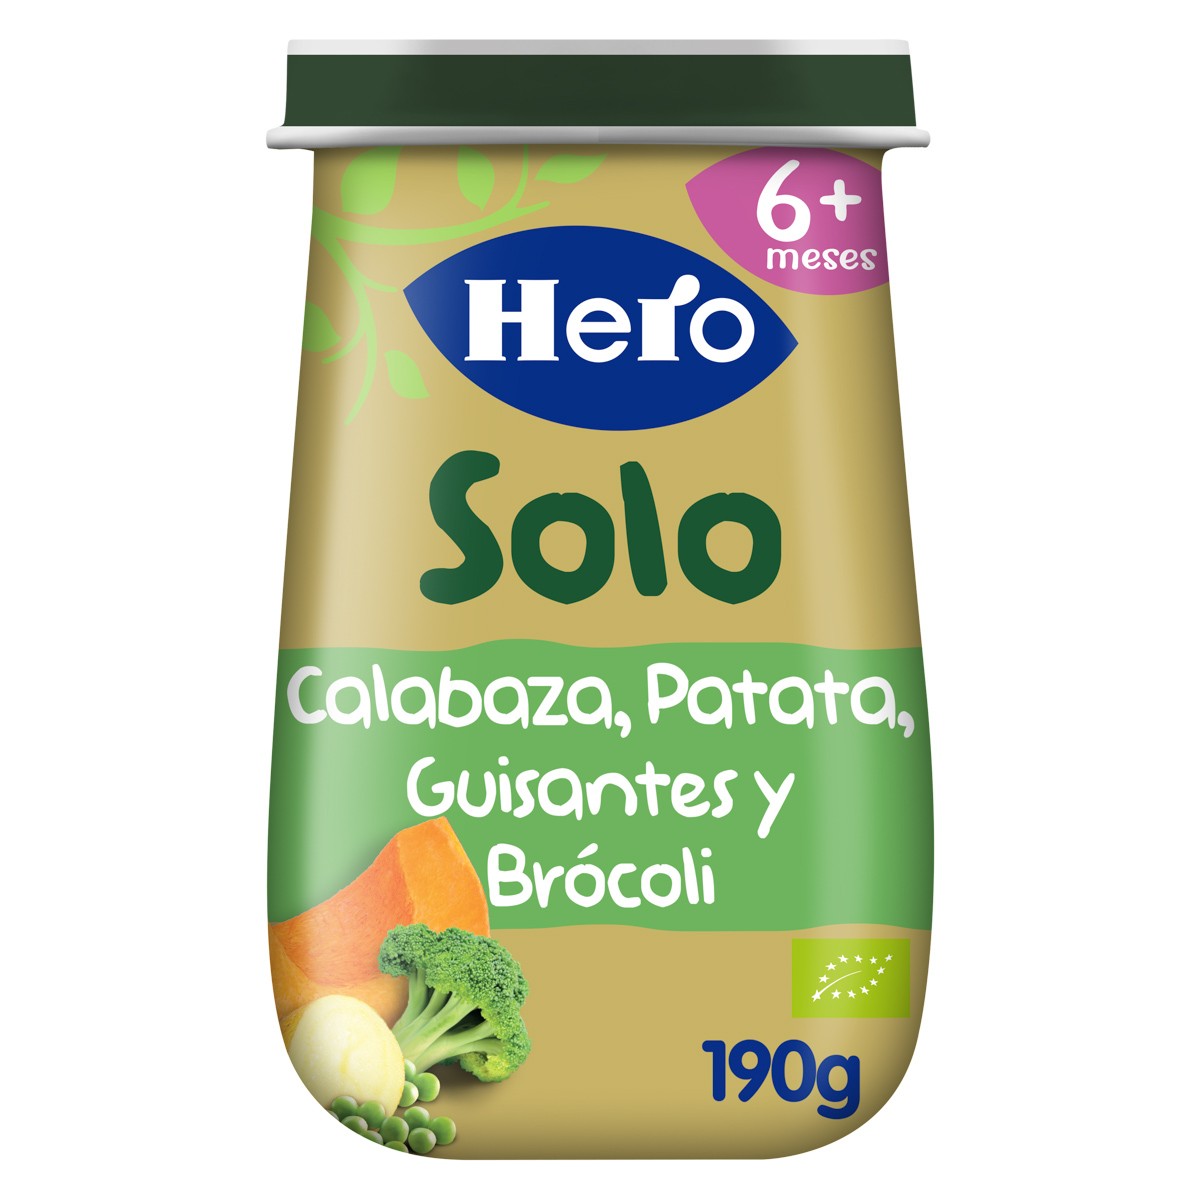 Hero Baby Solo ecológico crema de calabaza y puré de patatas 190g